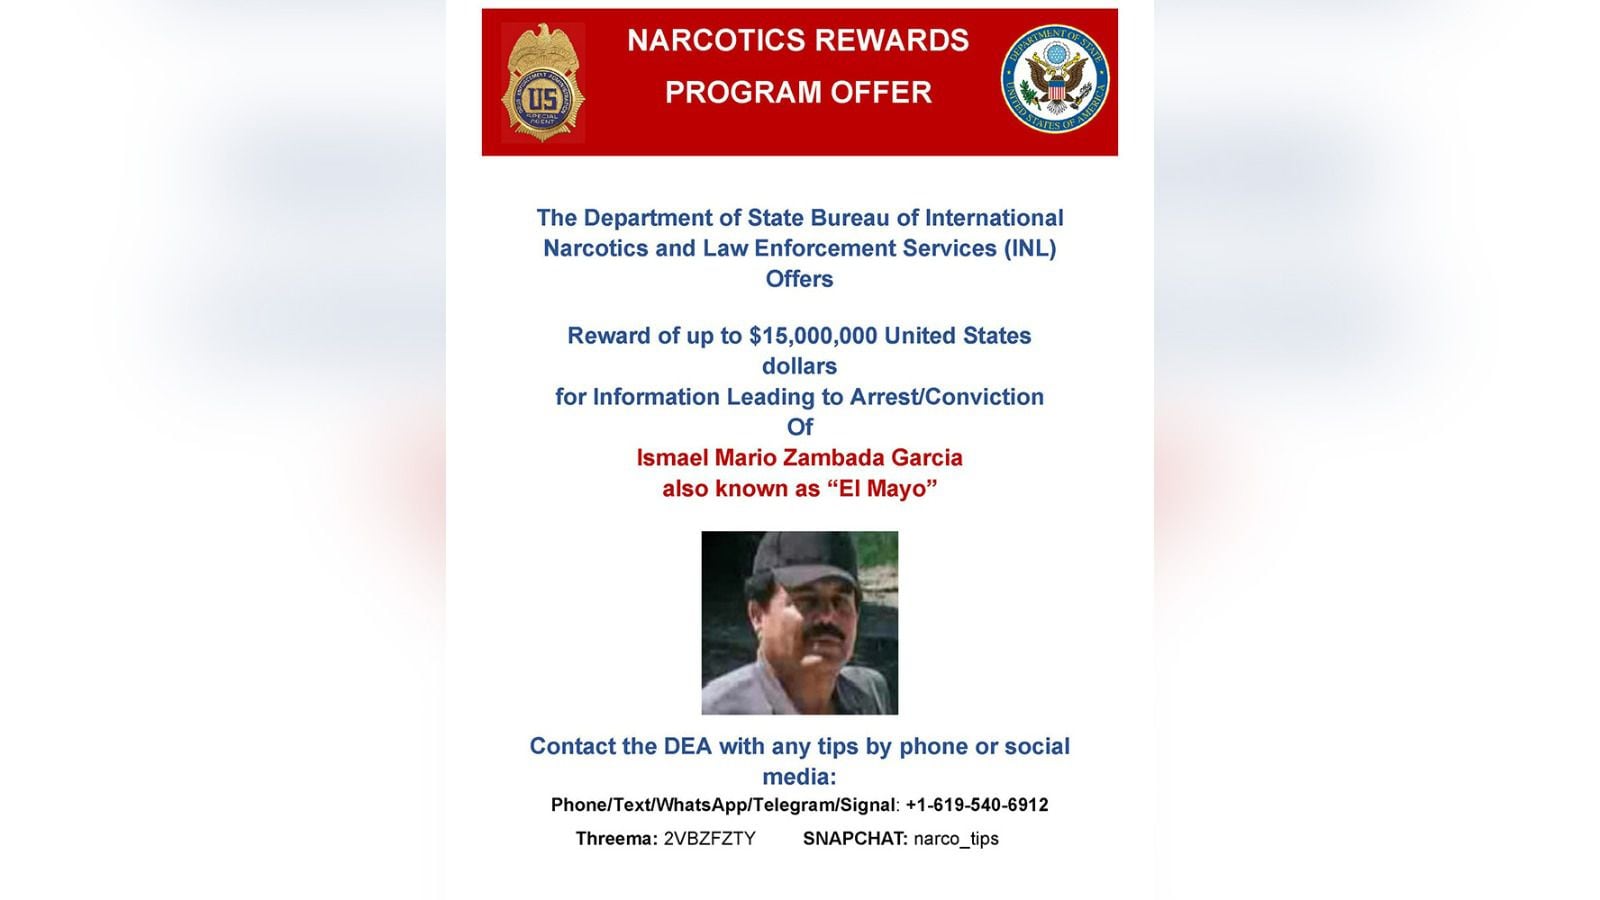 En febrero de este año, El 'Mayo' fue acusado de tráfico de fentanilo. (Foto: Departamento de Justicia de Estados Unidos)